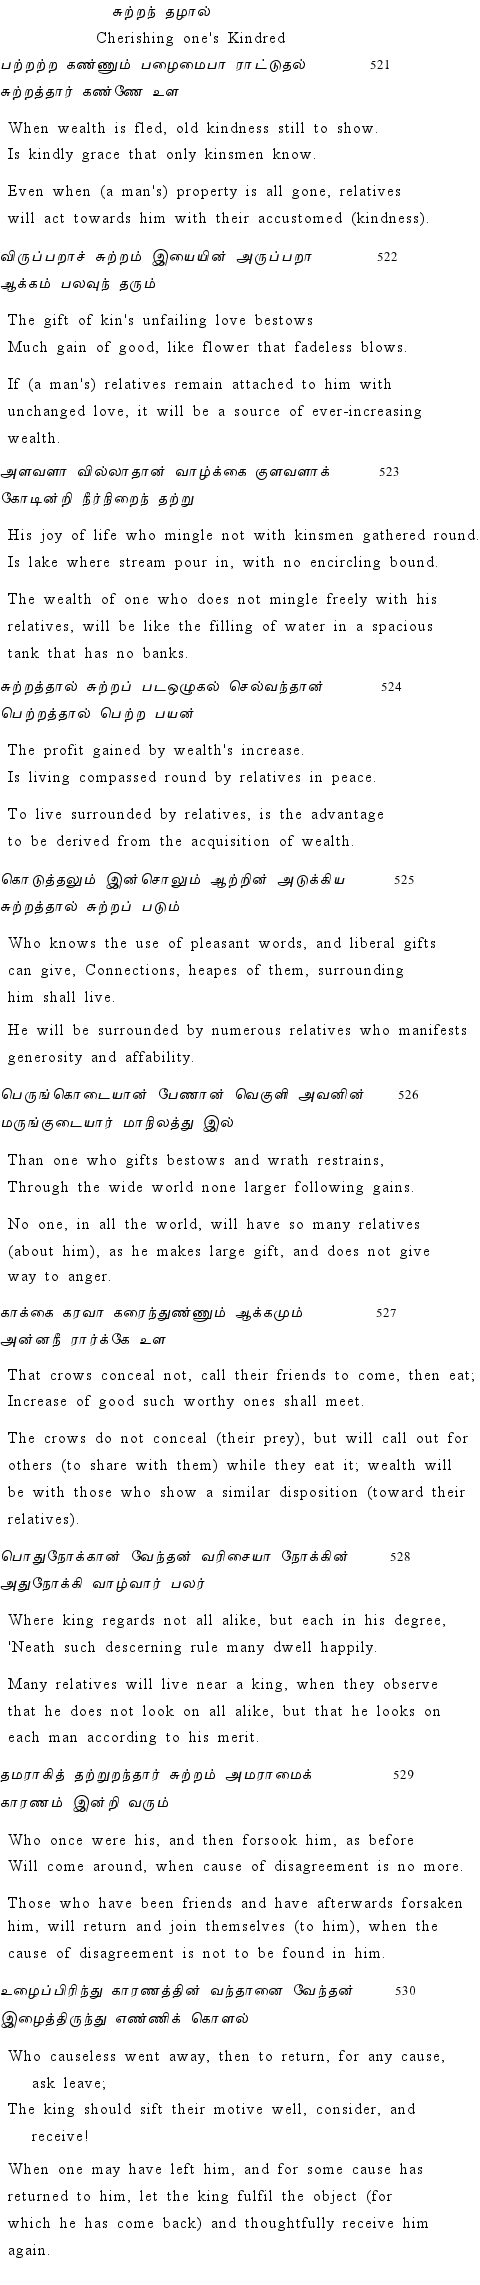 Text of Adhikaram 53